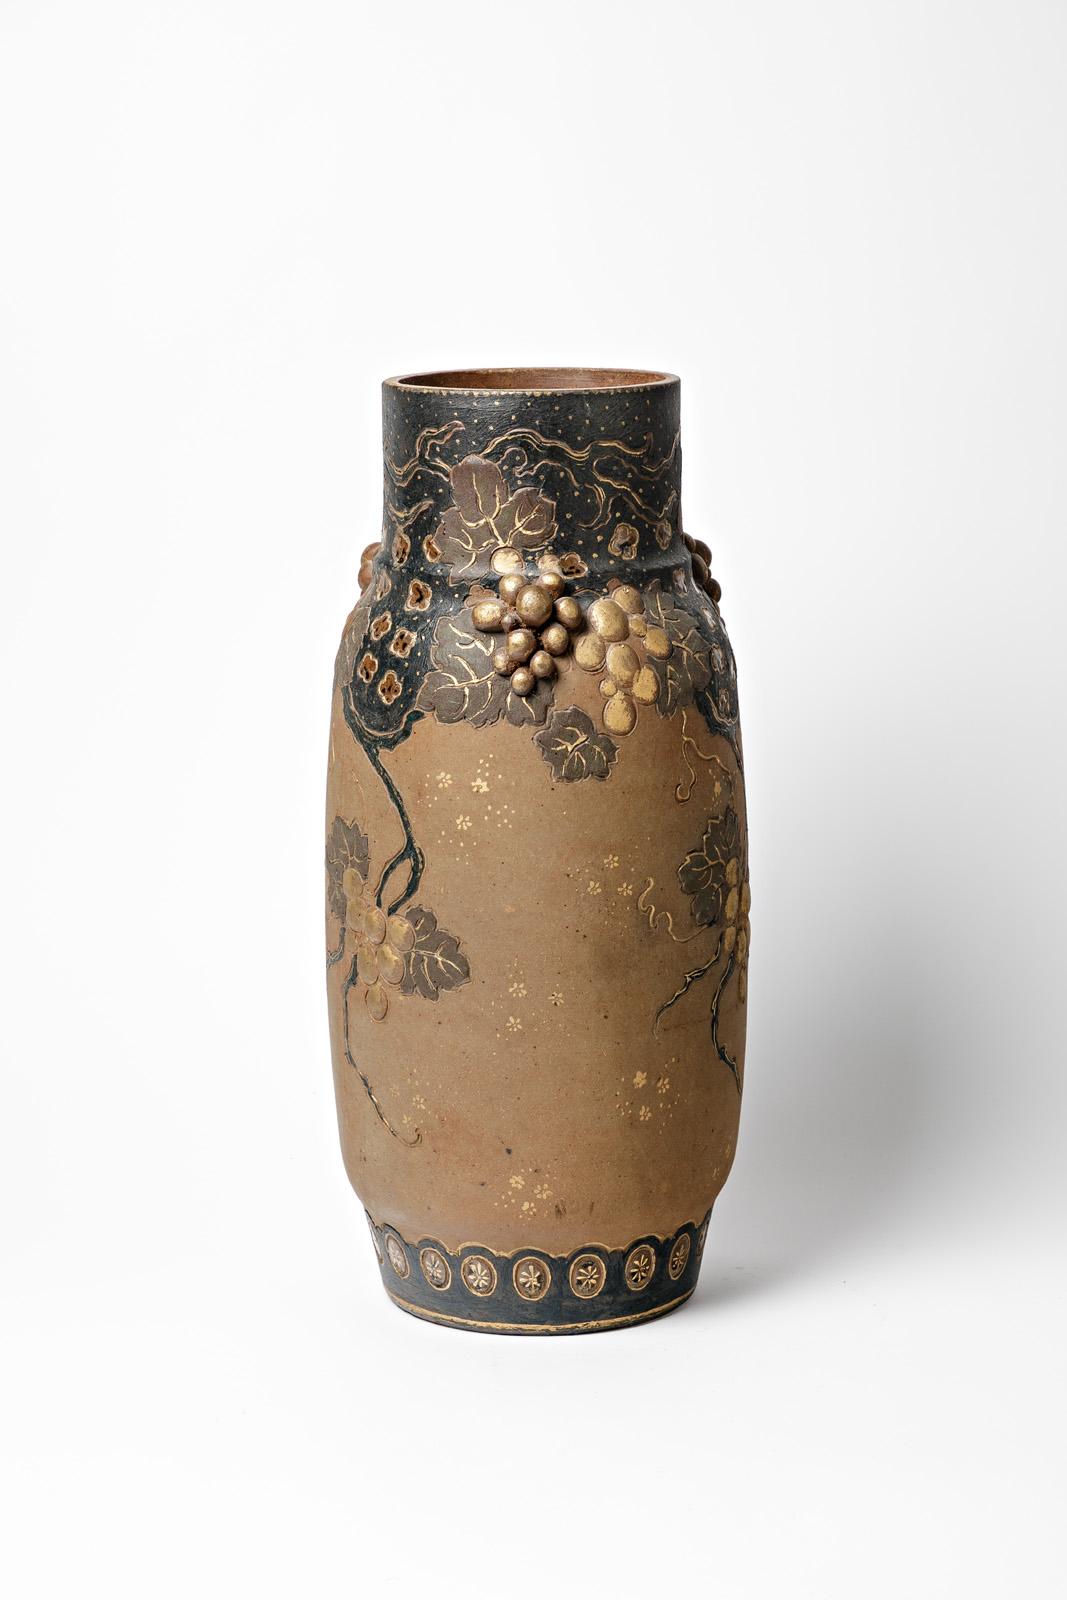 Late 19th Century Ernest Chaplet Large Art Nouveau 1900 Blue and Brown Ceramic Vase Asian Decor